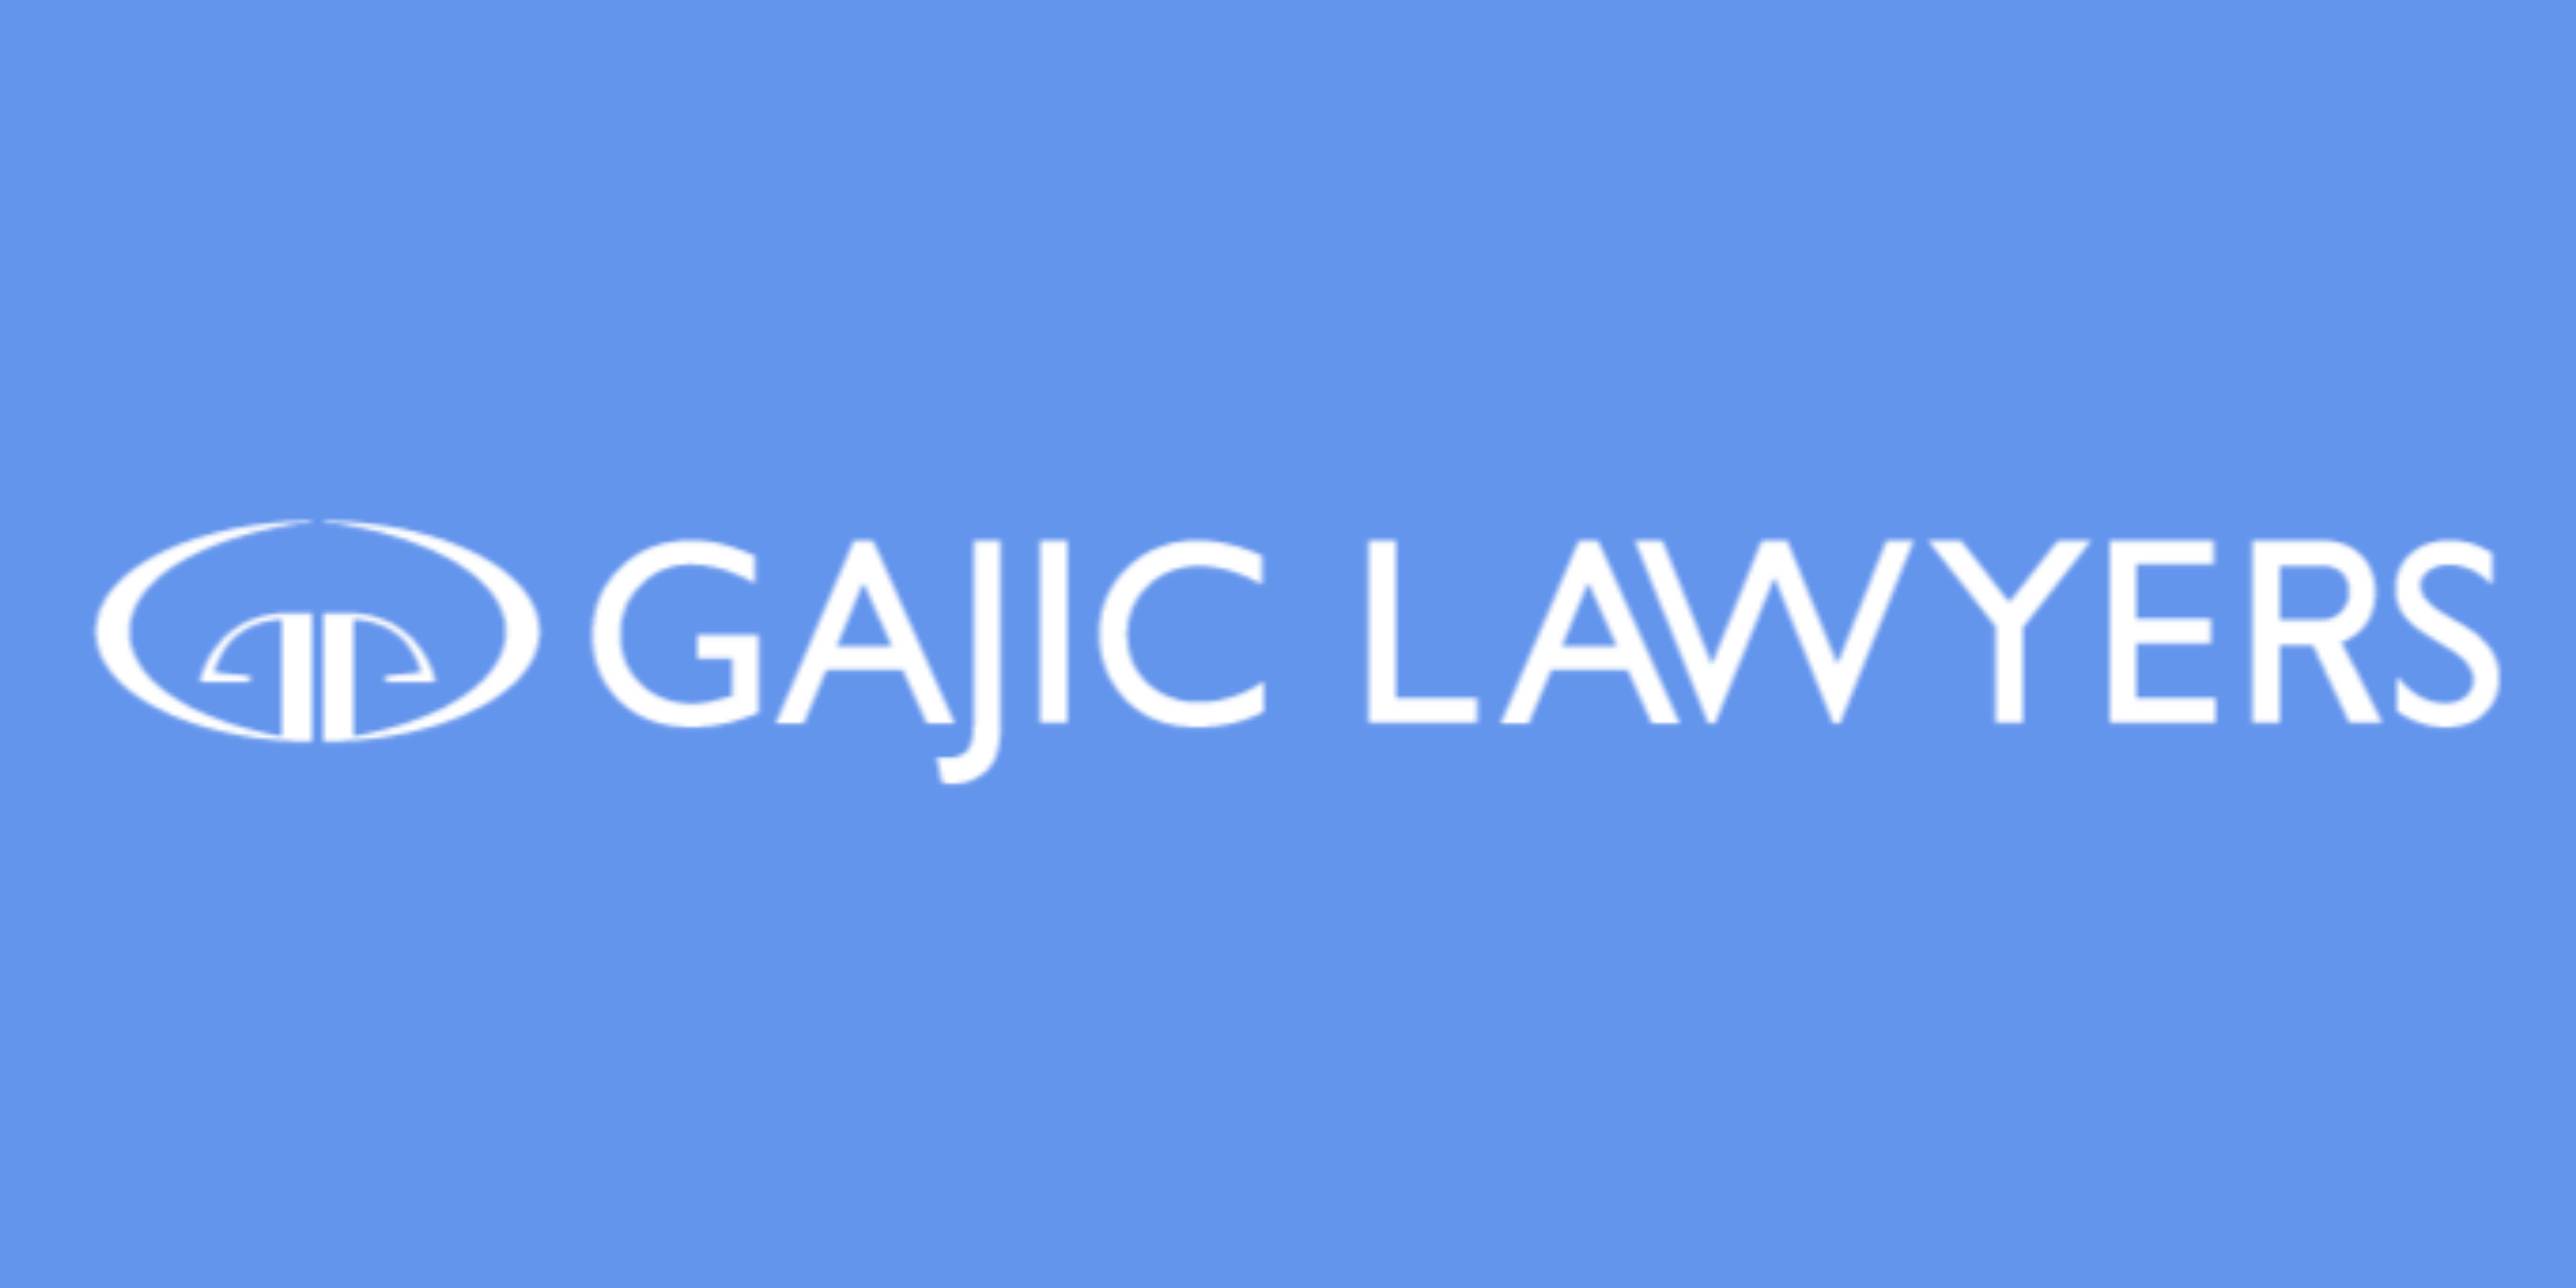 Gajic Lawyers logo